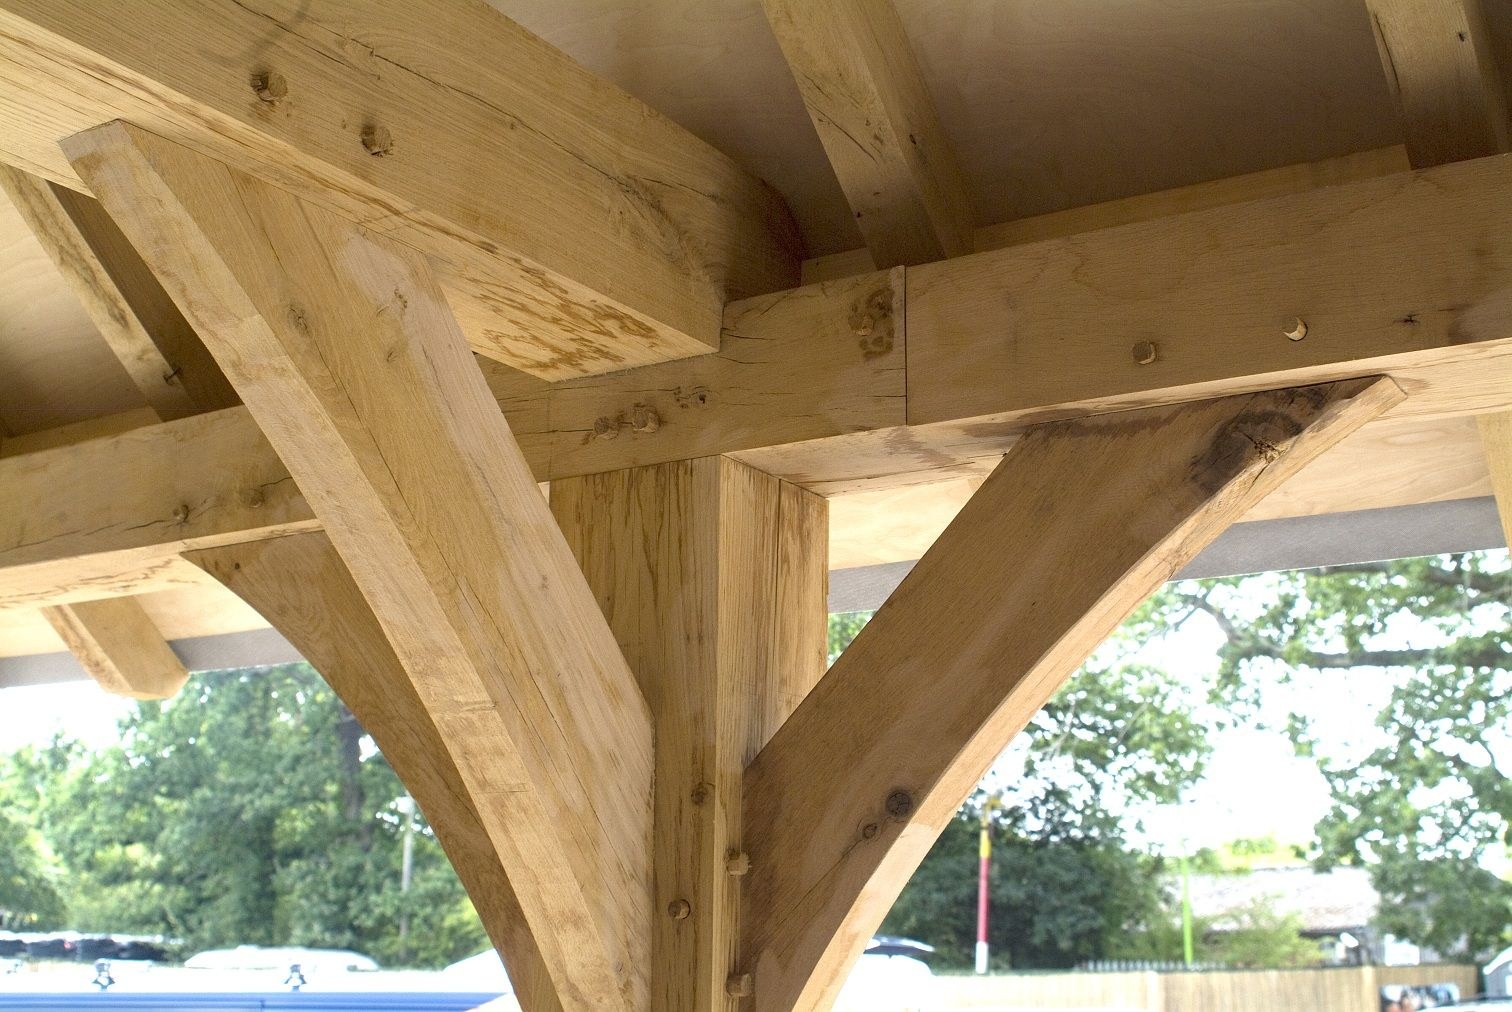 Timber frame Construction details